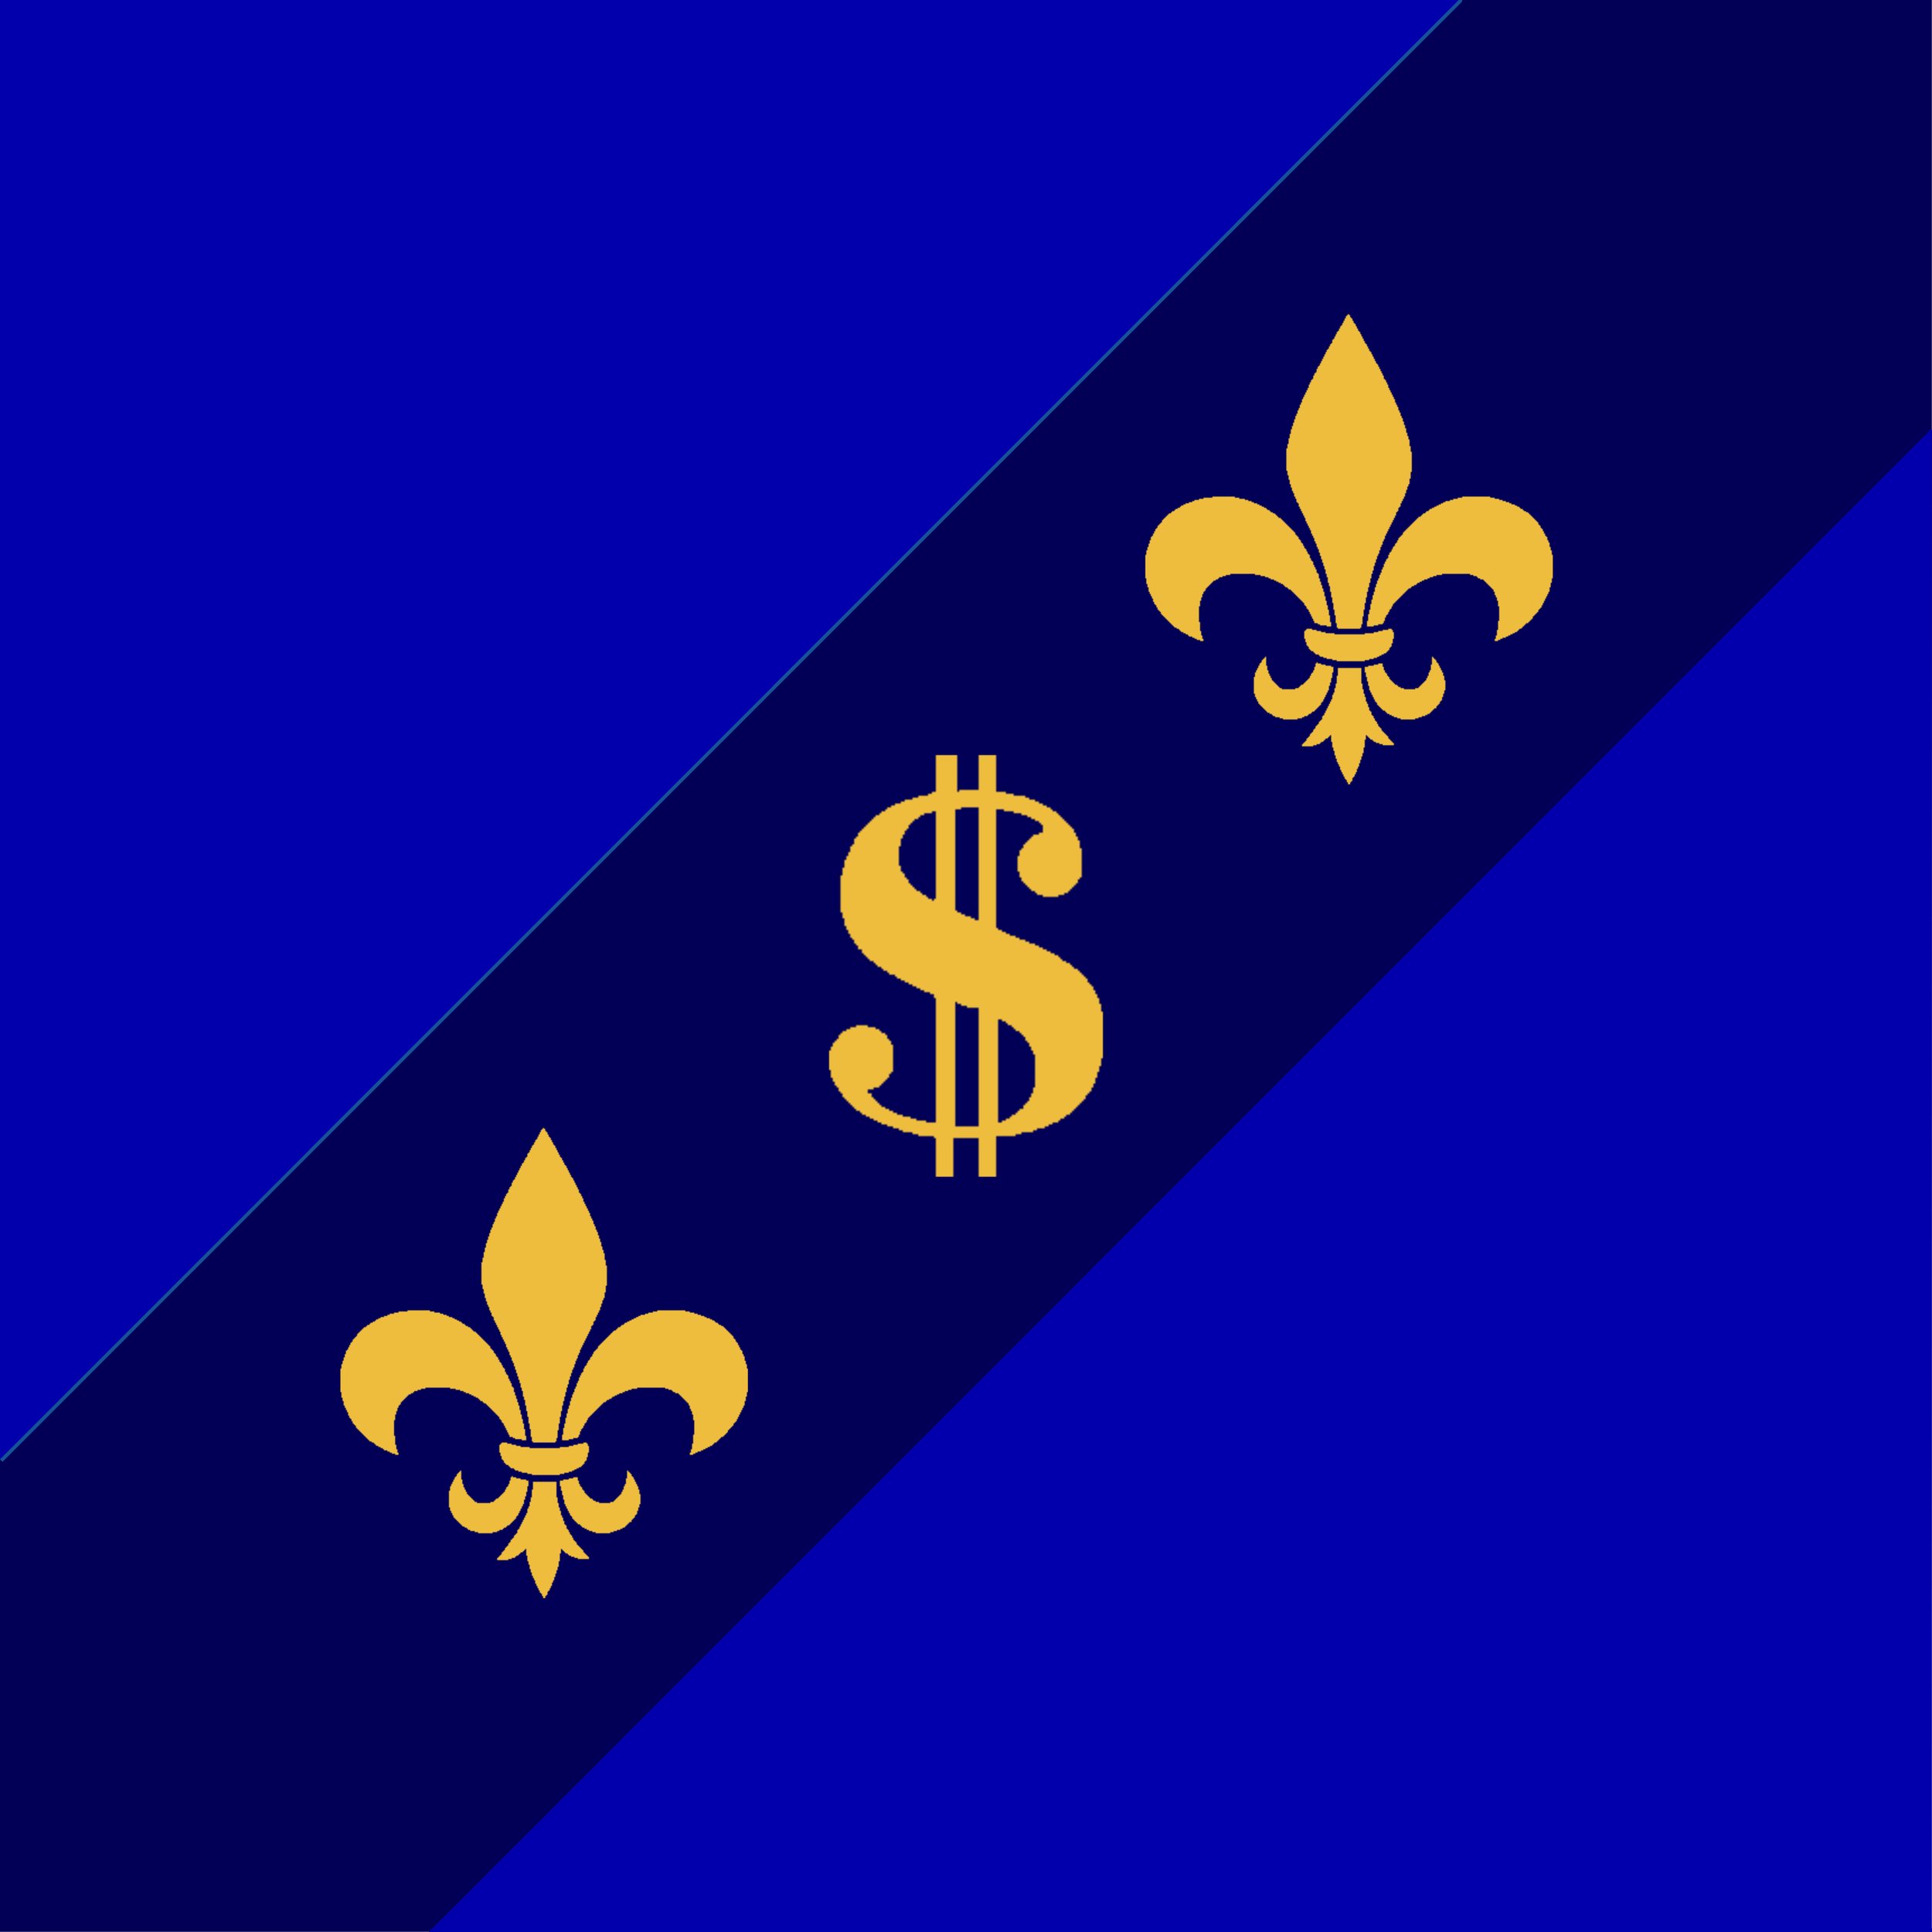 fleur-de-lis-transparent - Council for A Better Louisiana